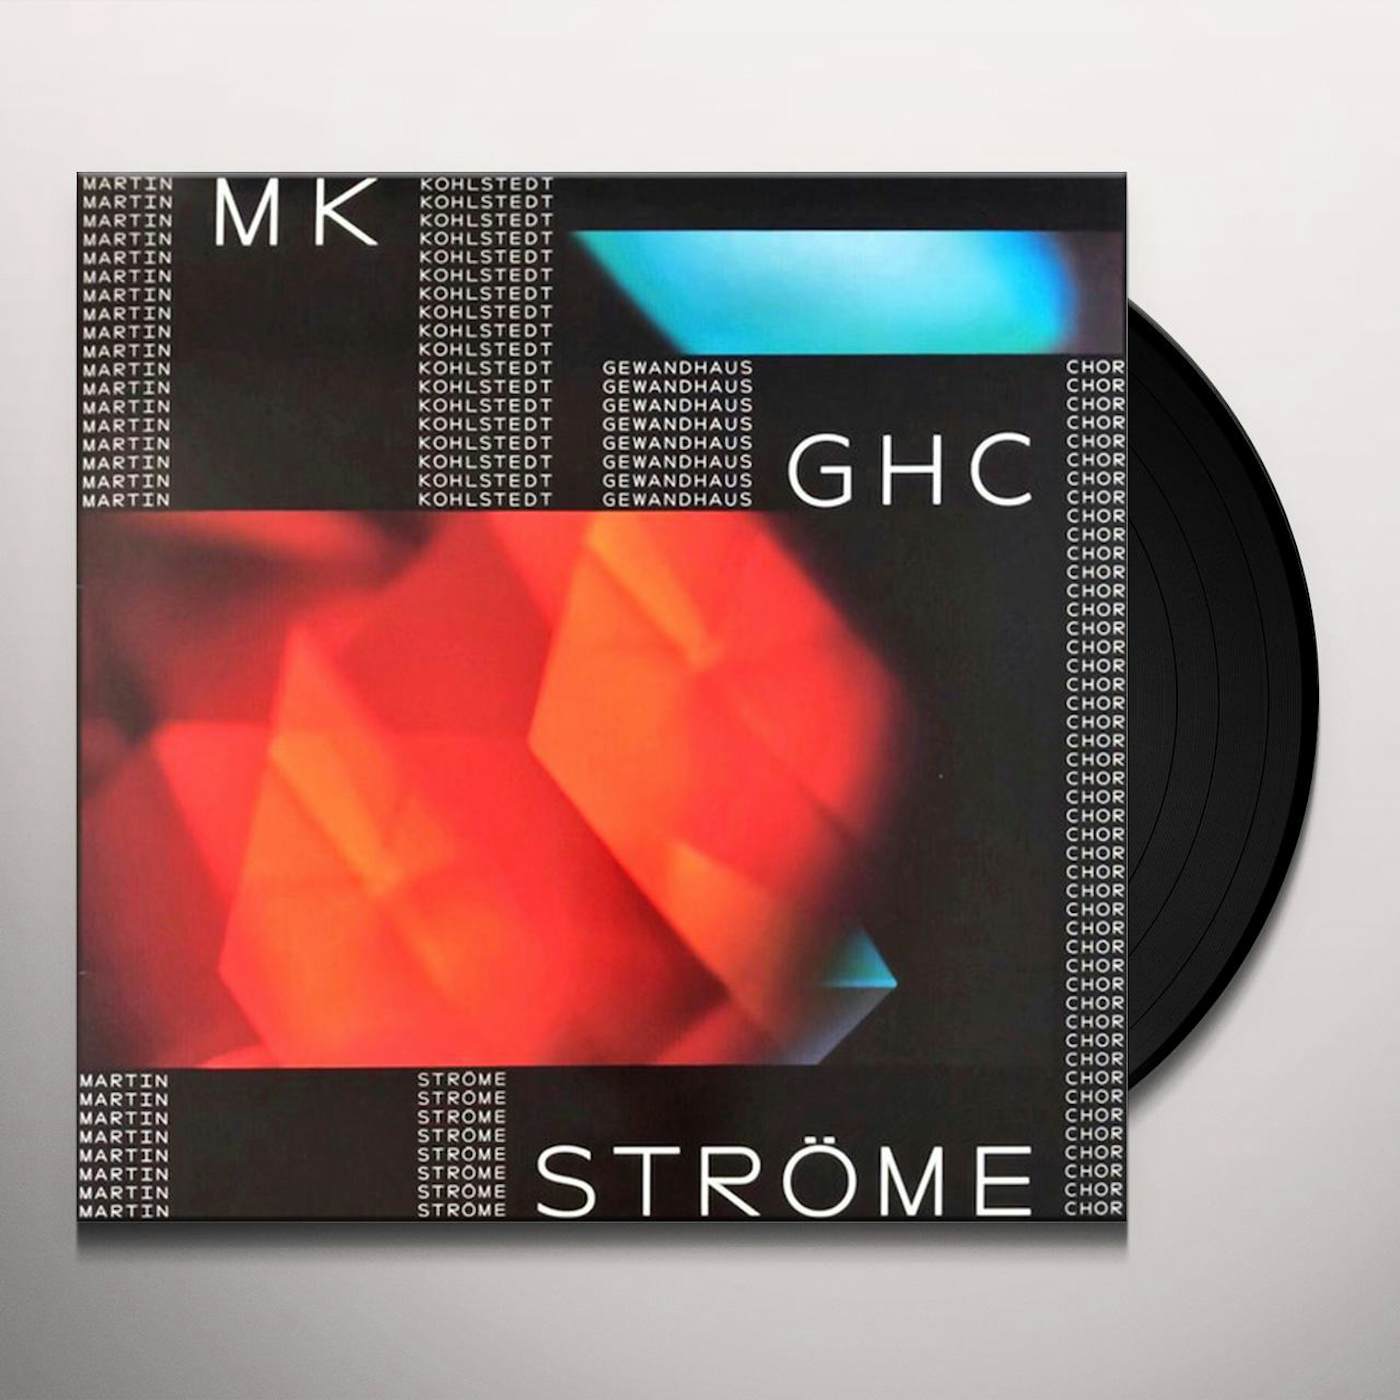 Martin Kohlstedt STROME Vinyl Record